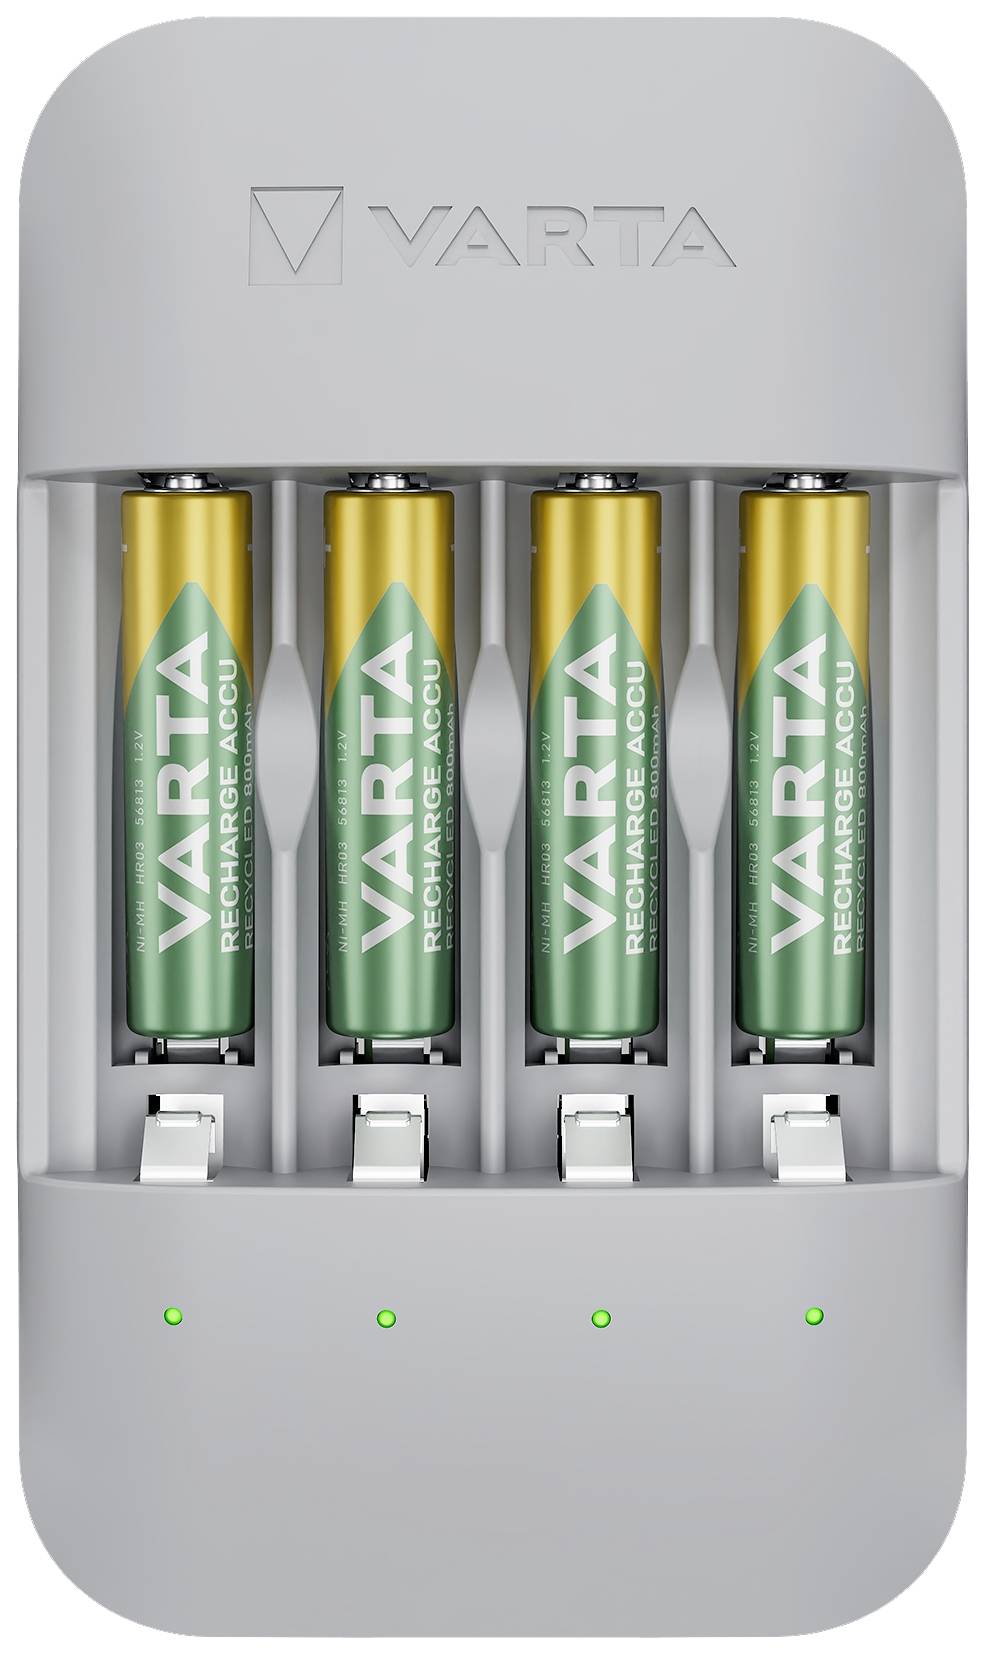 VARTA Ladegerät Eco Charger Pro Recycled 4x AAA 56813 800mAh